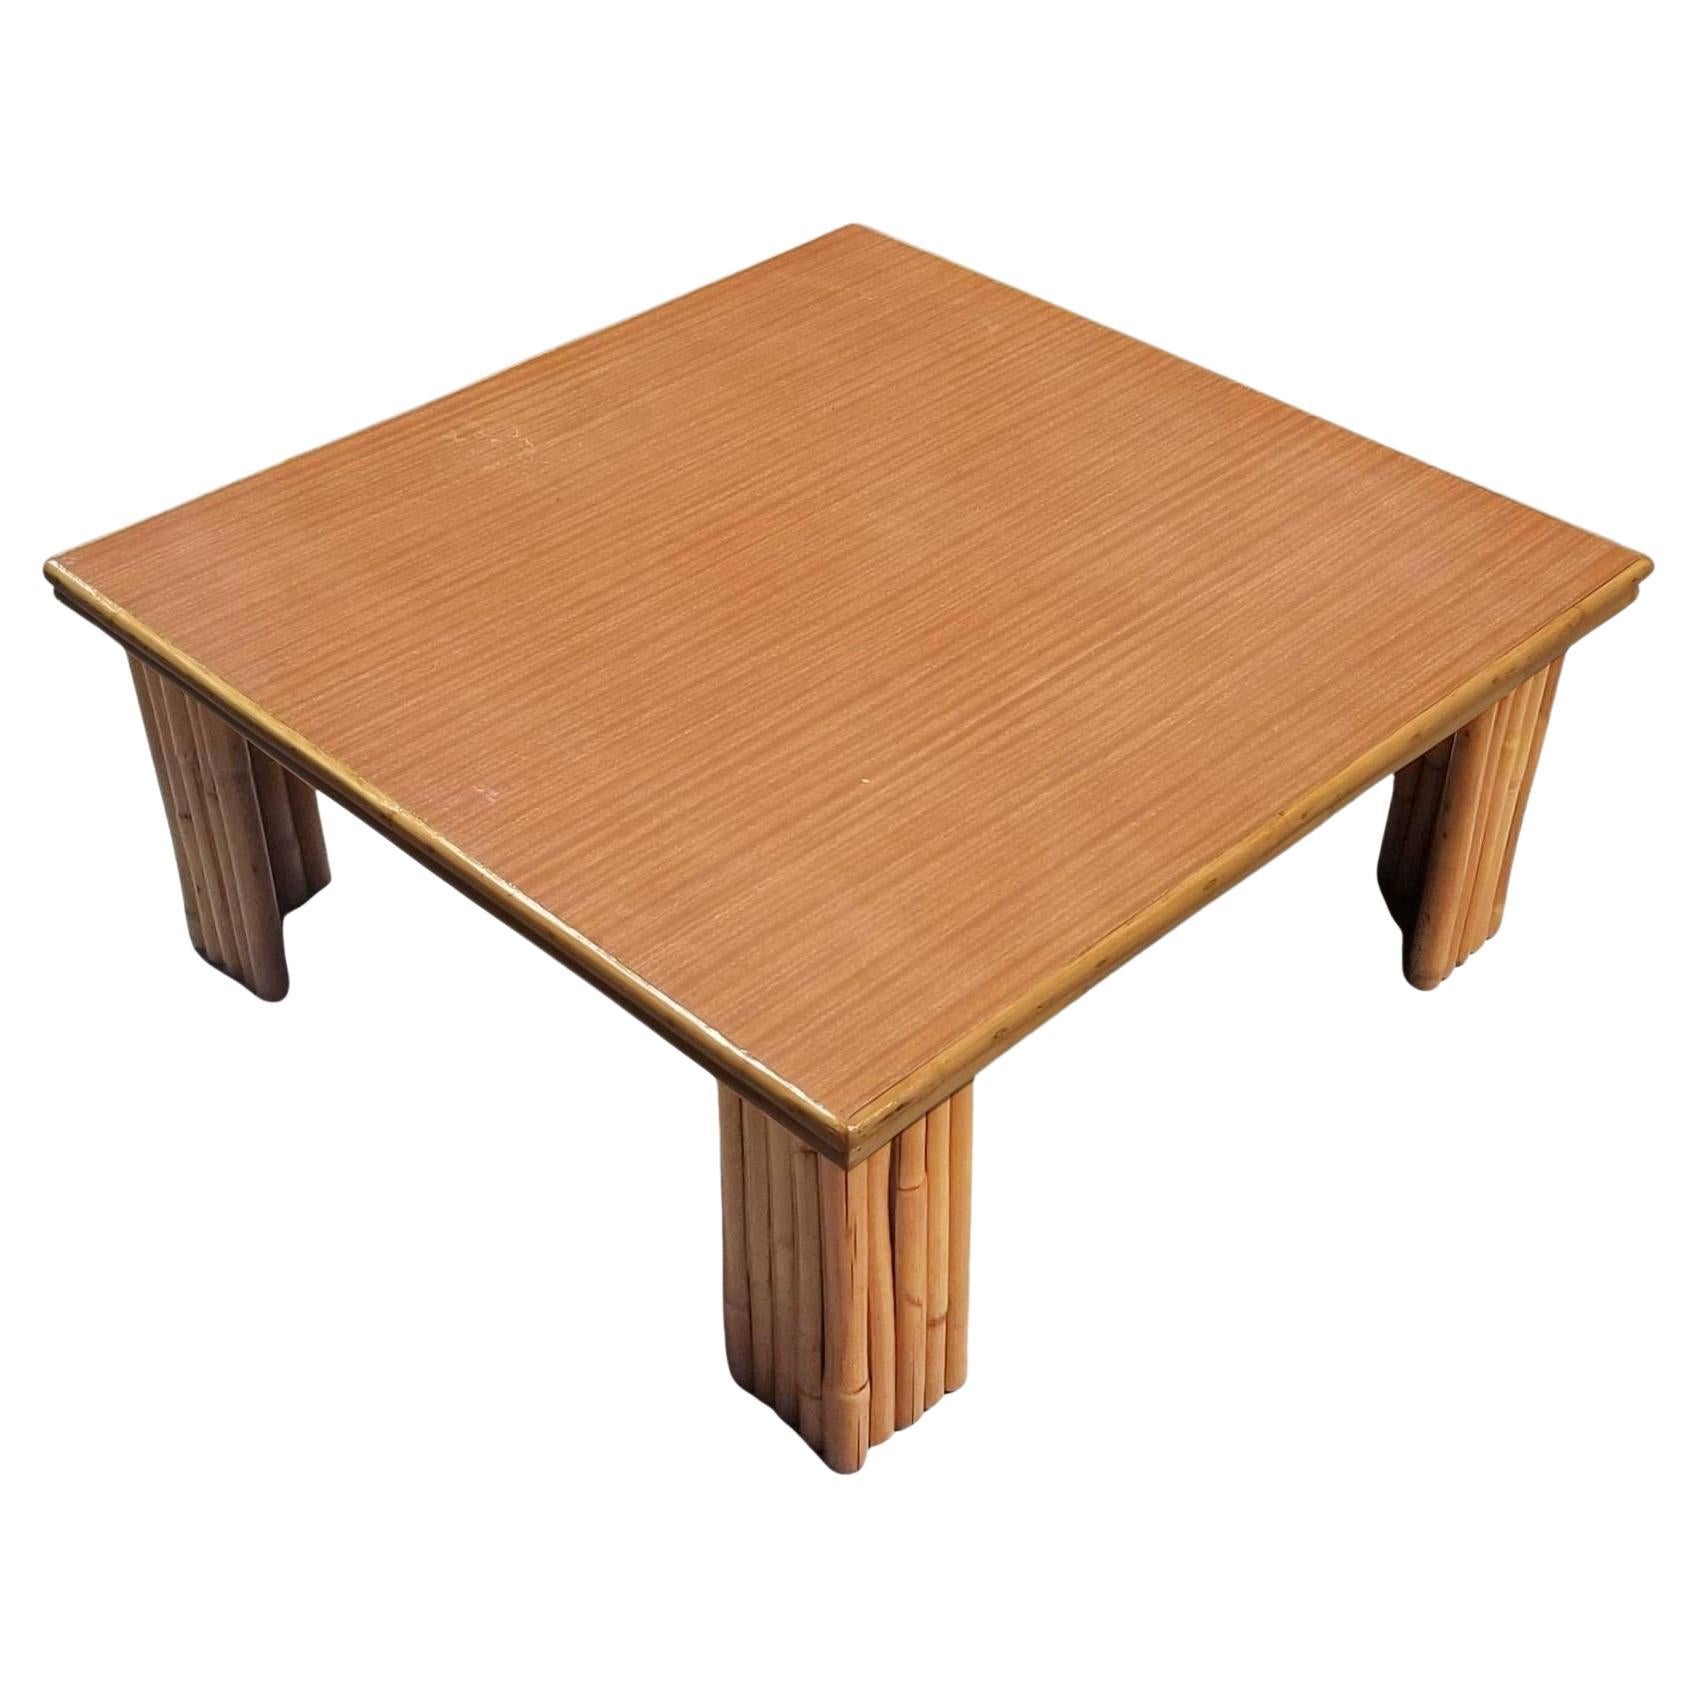 Table basse en rotin restaurée de 3 pieds de large avec plateau en formica